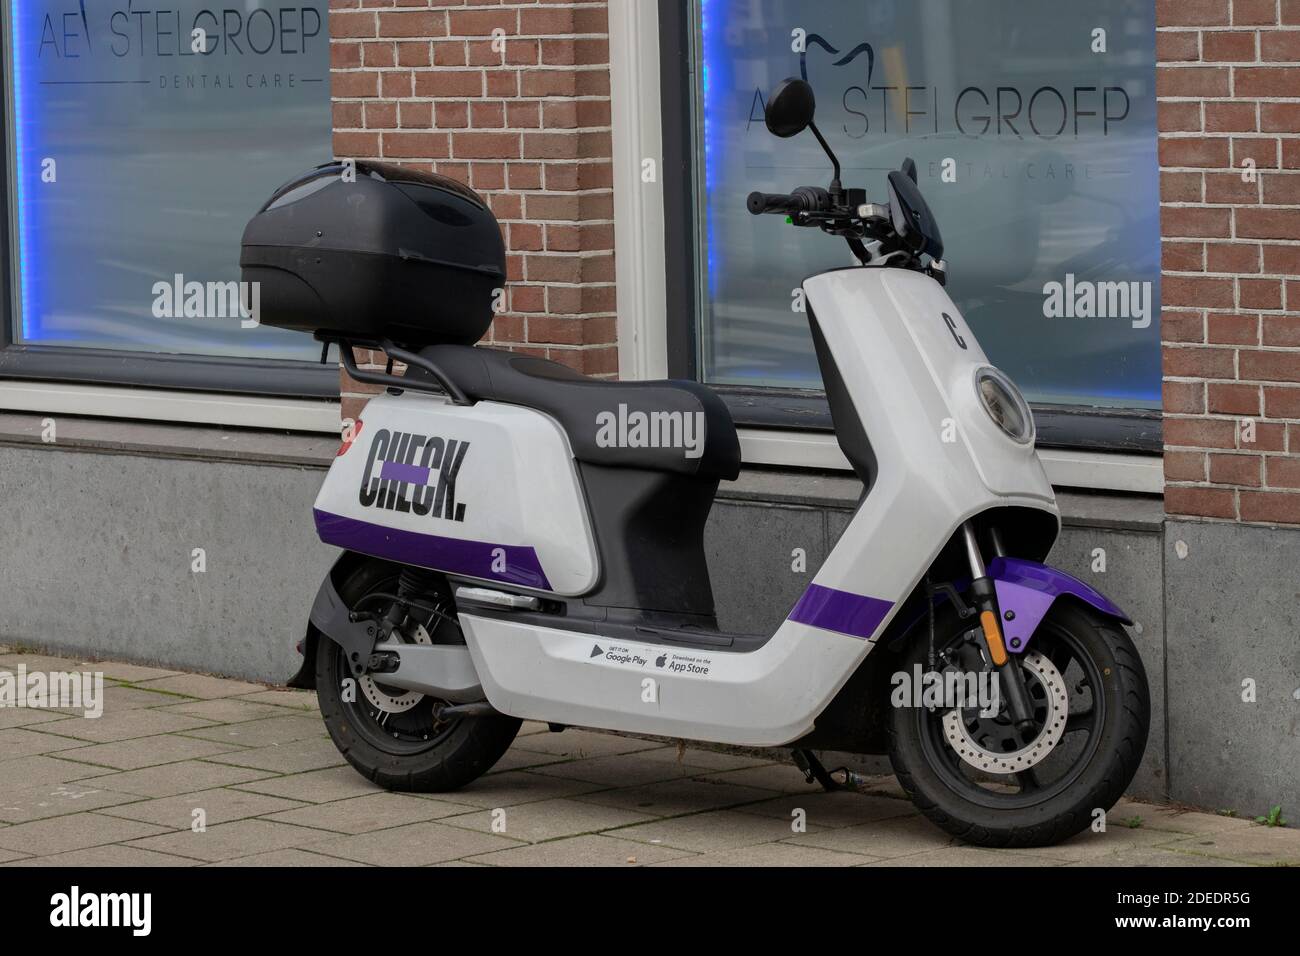 Prüfen Sie Motorroller Mieten In Amsterdam Niederlande 27-11-2020  Stockfotografie - Alamy